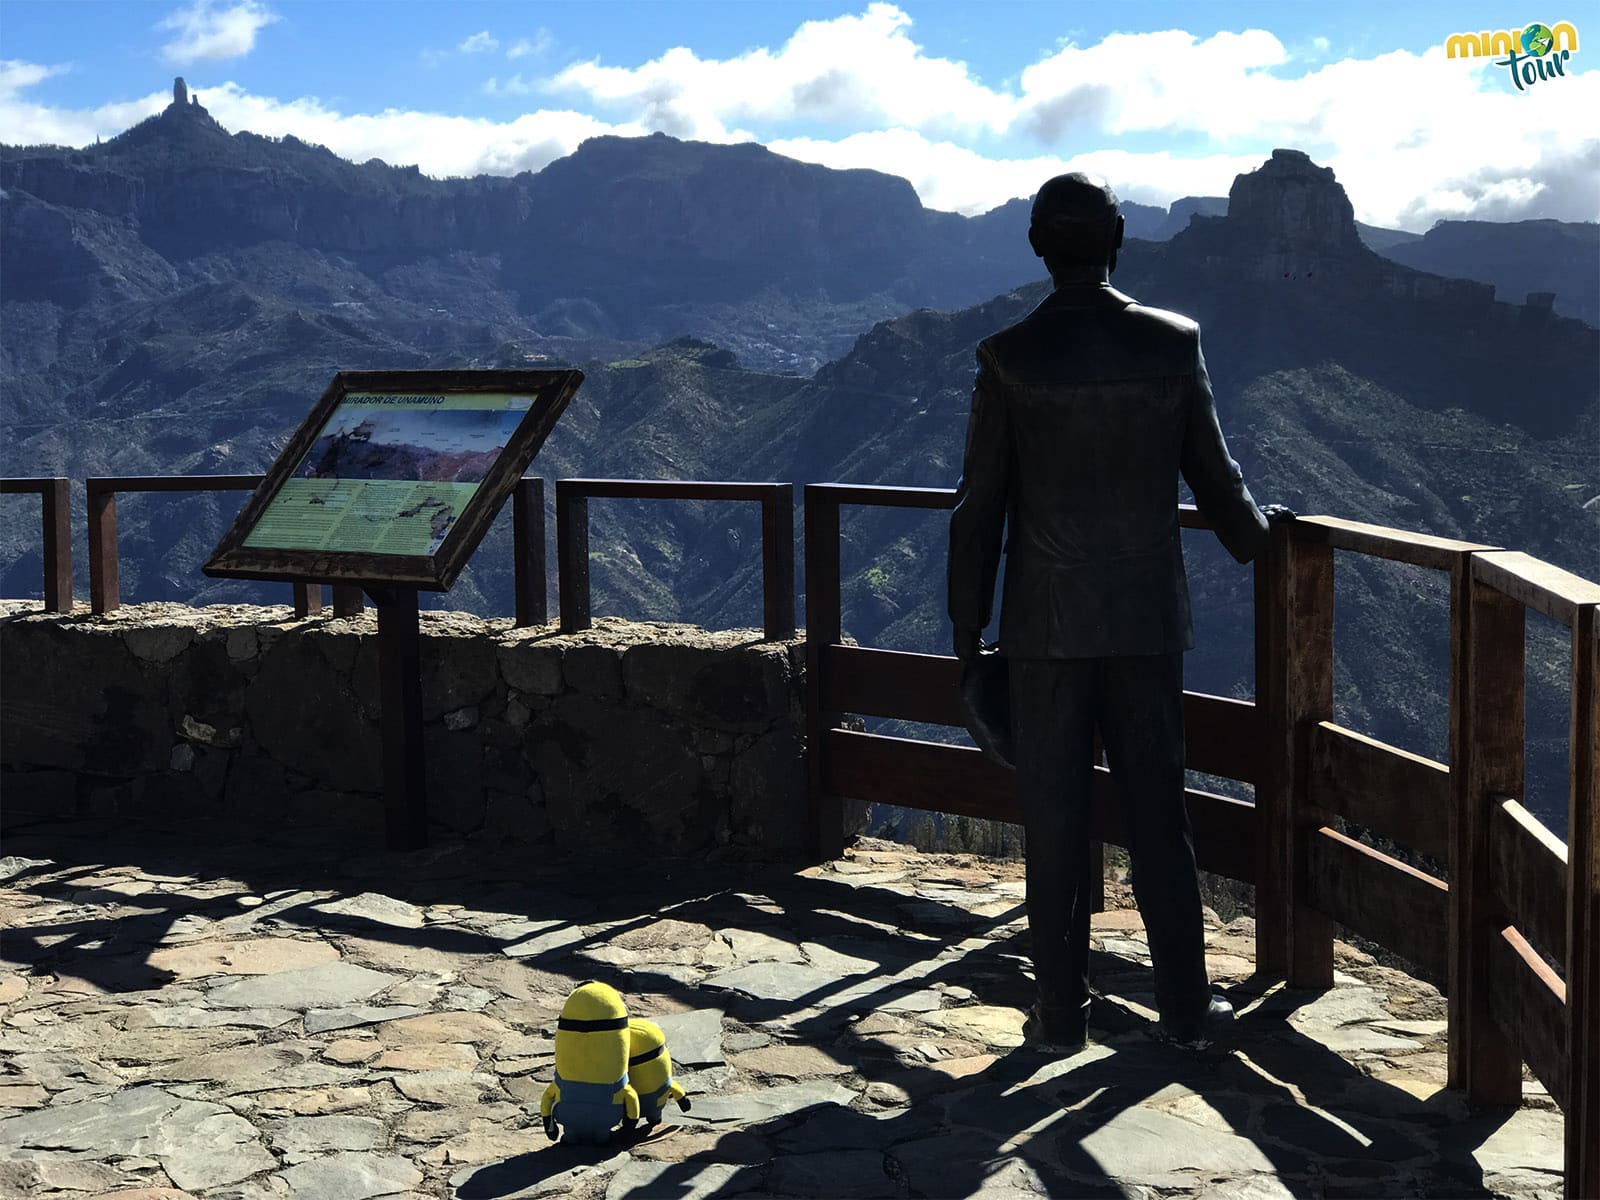 Mirador de Unamuno en Artenara, una parada en nuestra ruta por la GC-210